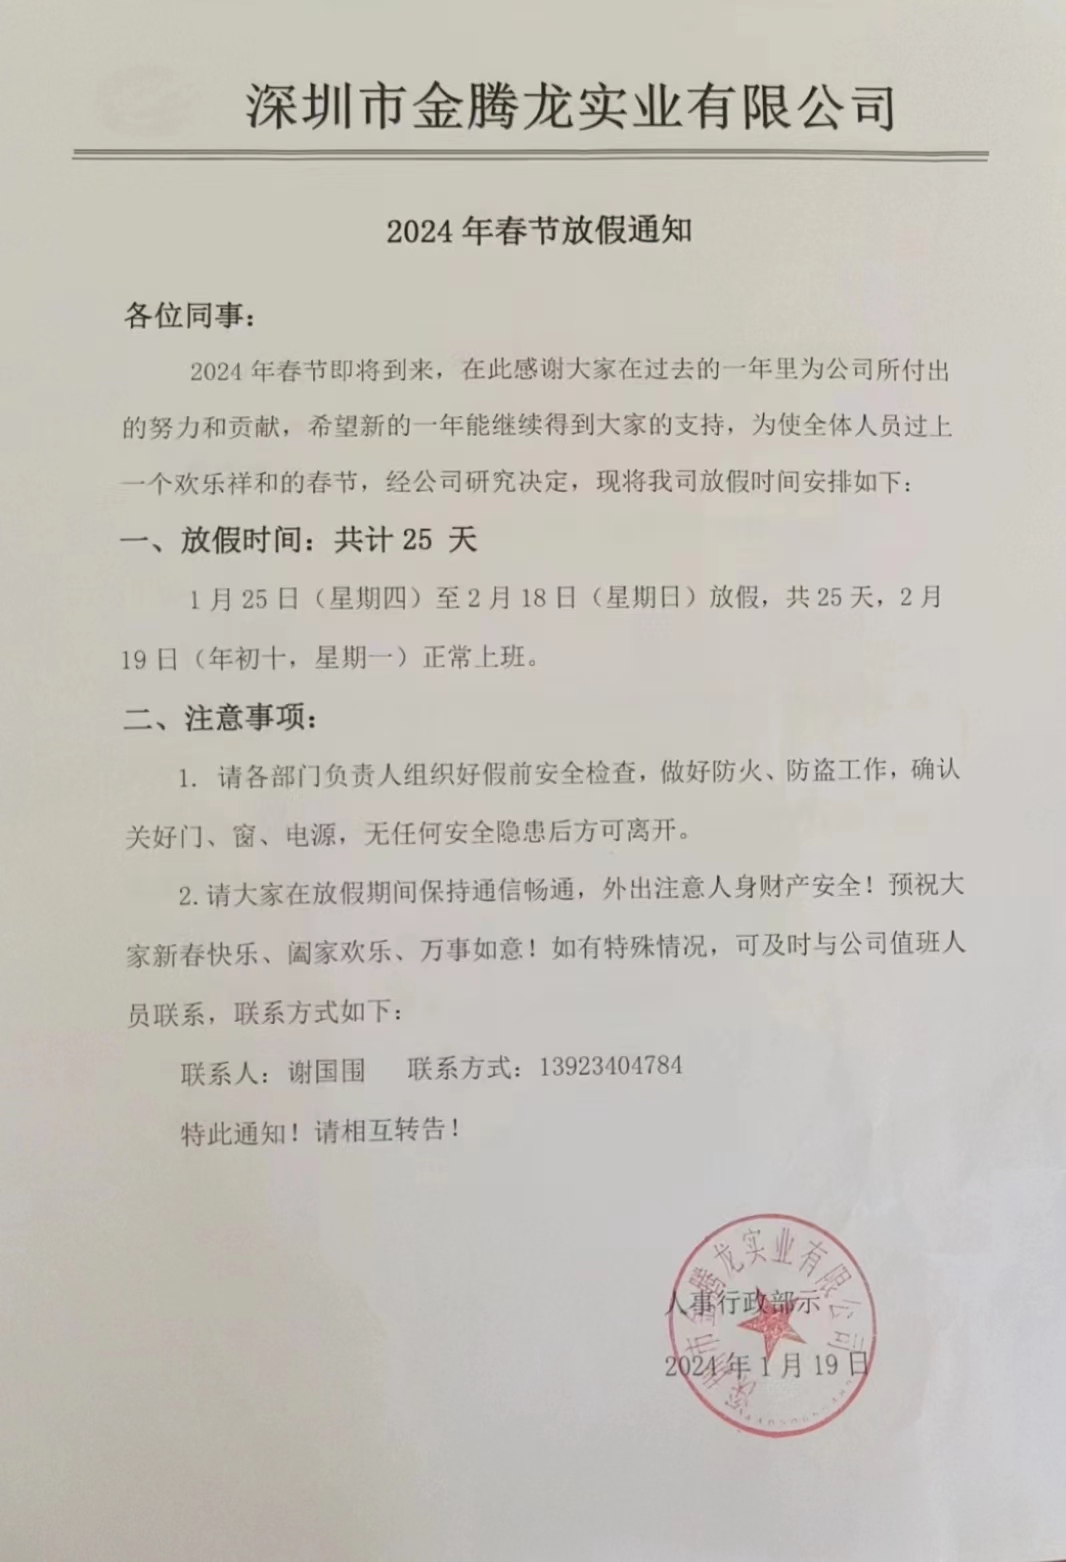 深圳市金腾龙实业有限公司2024年春节放假通知